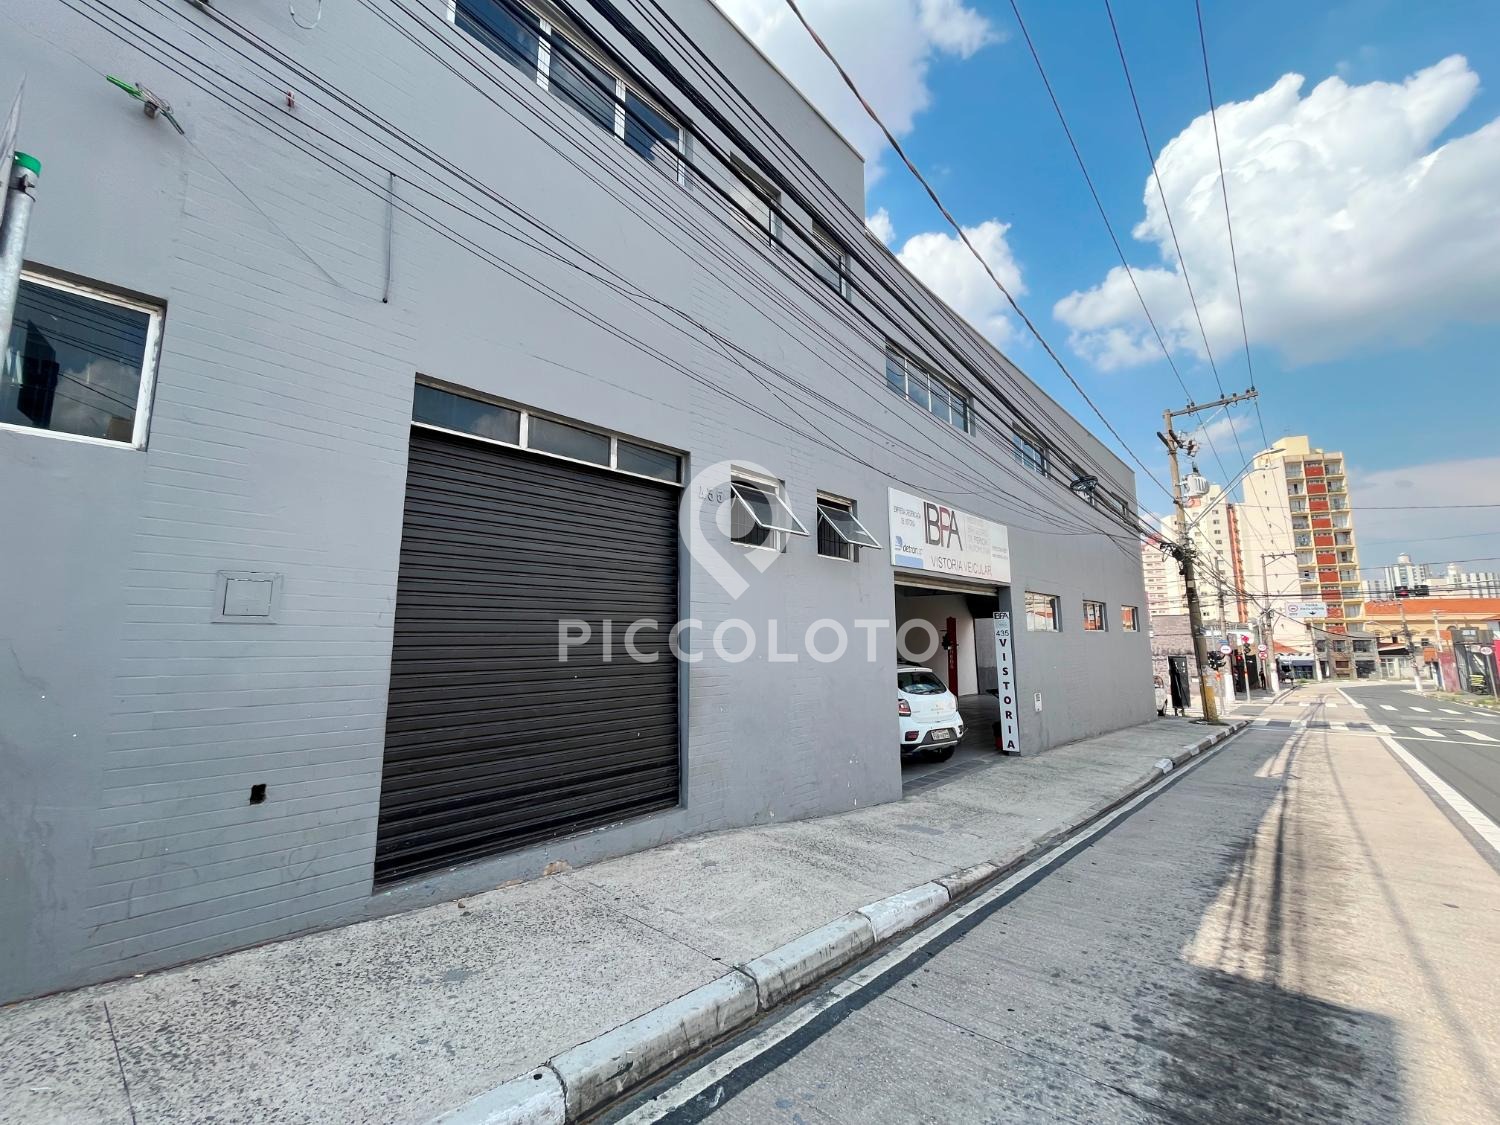 Piccoloto -Galpão à venda no Centro em Campinas